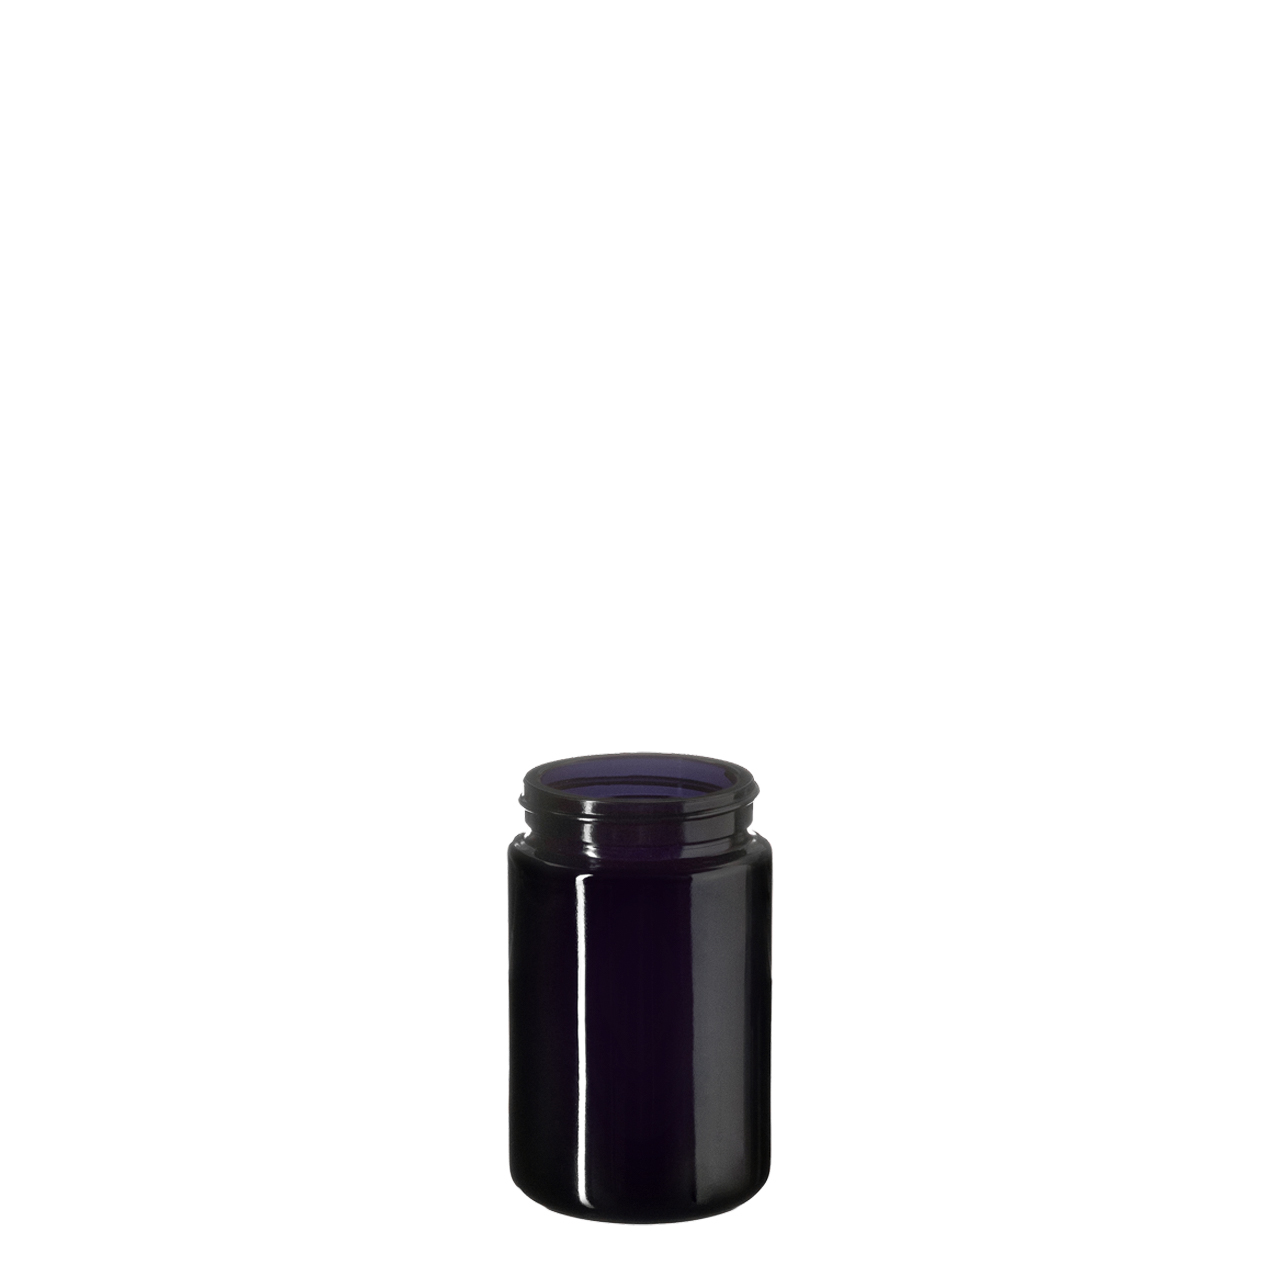 Wide neck jar Saturn 100 ml Height 84.4 mm, 48/400, Miron